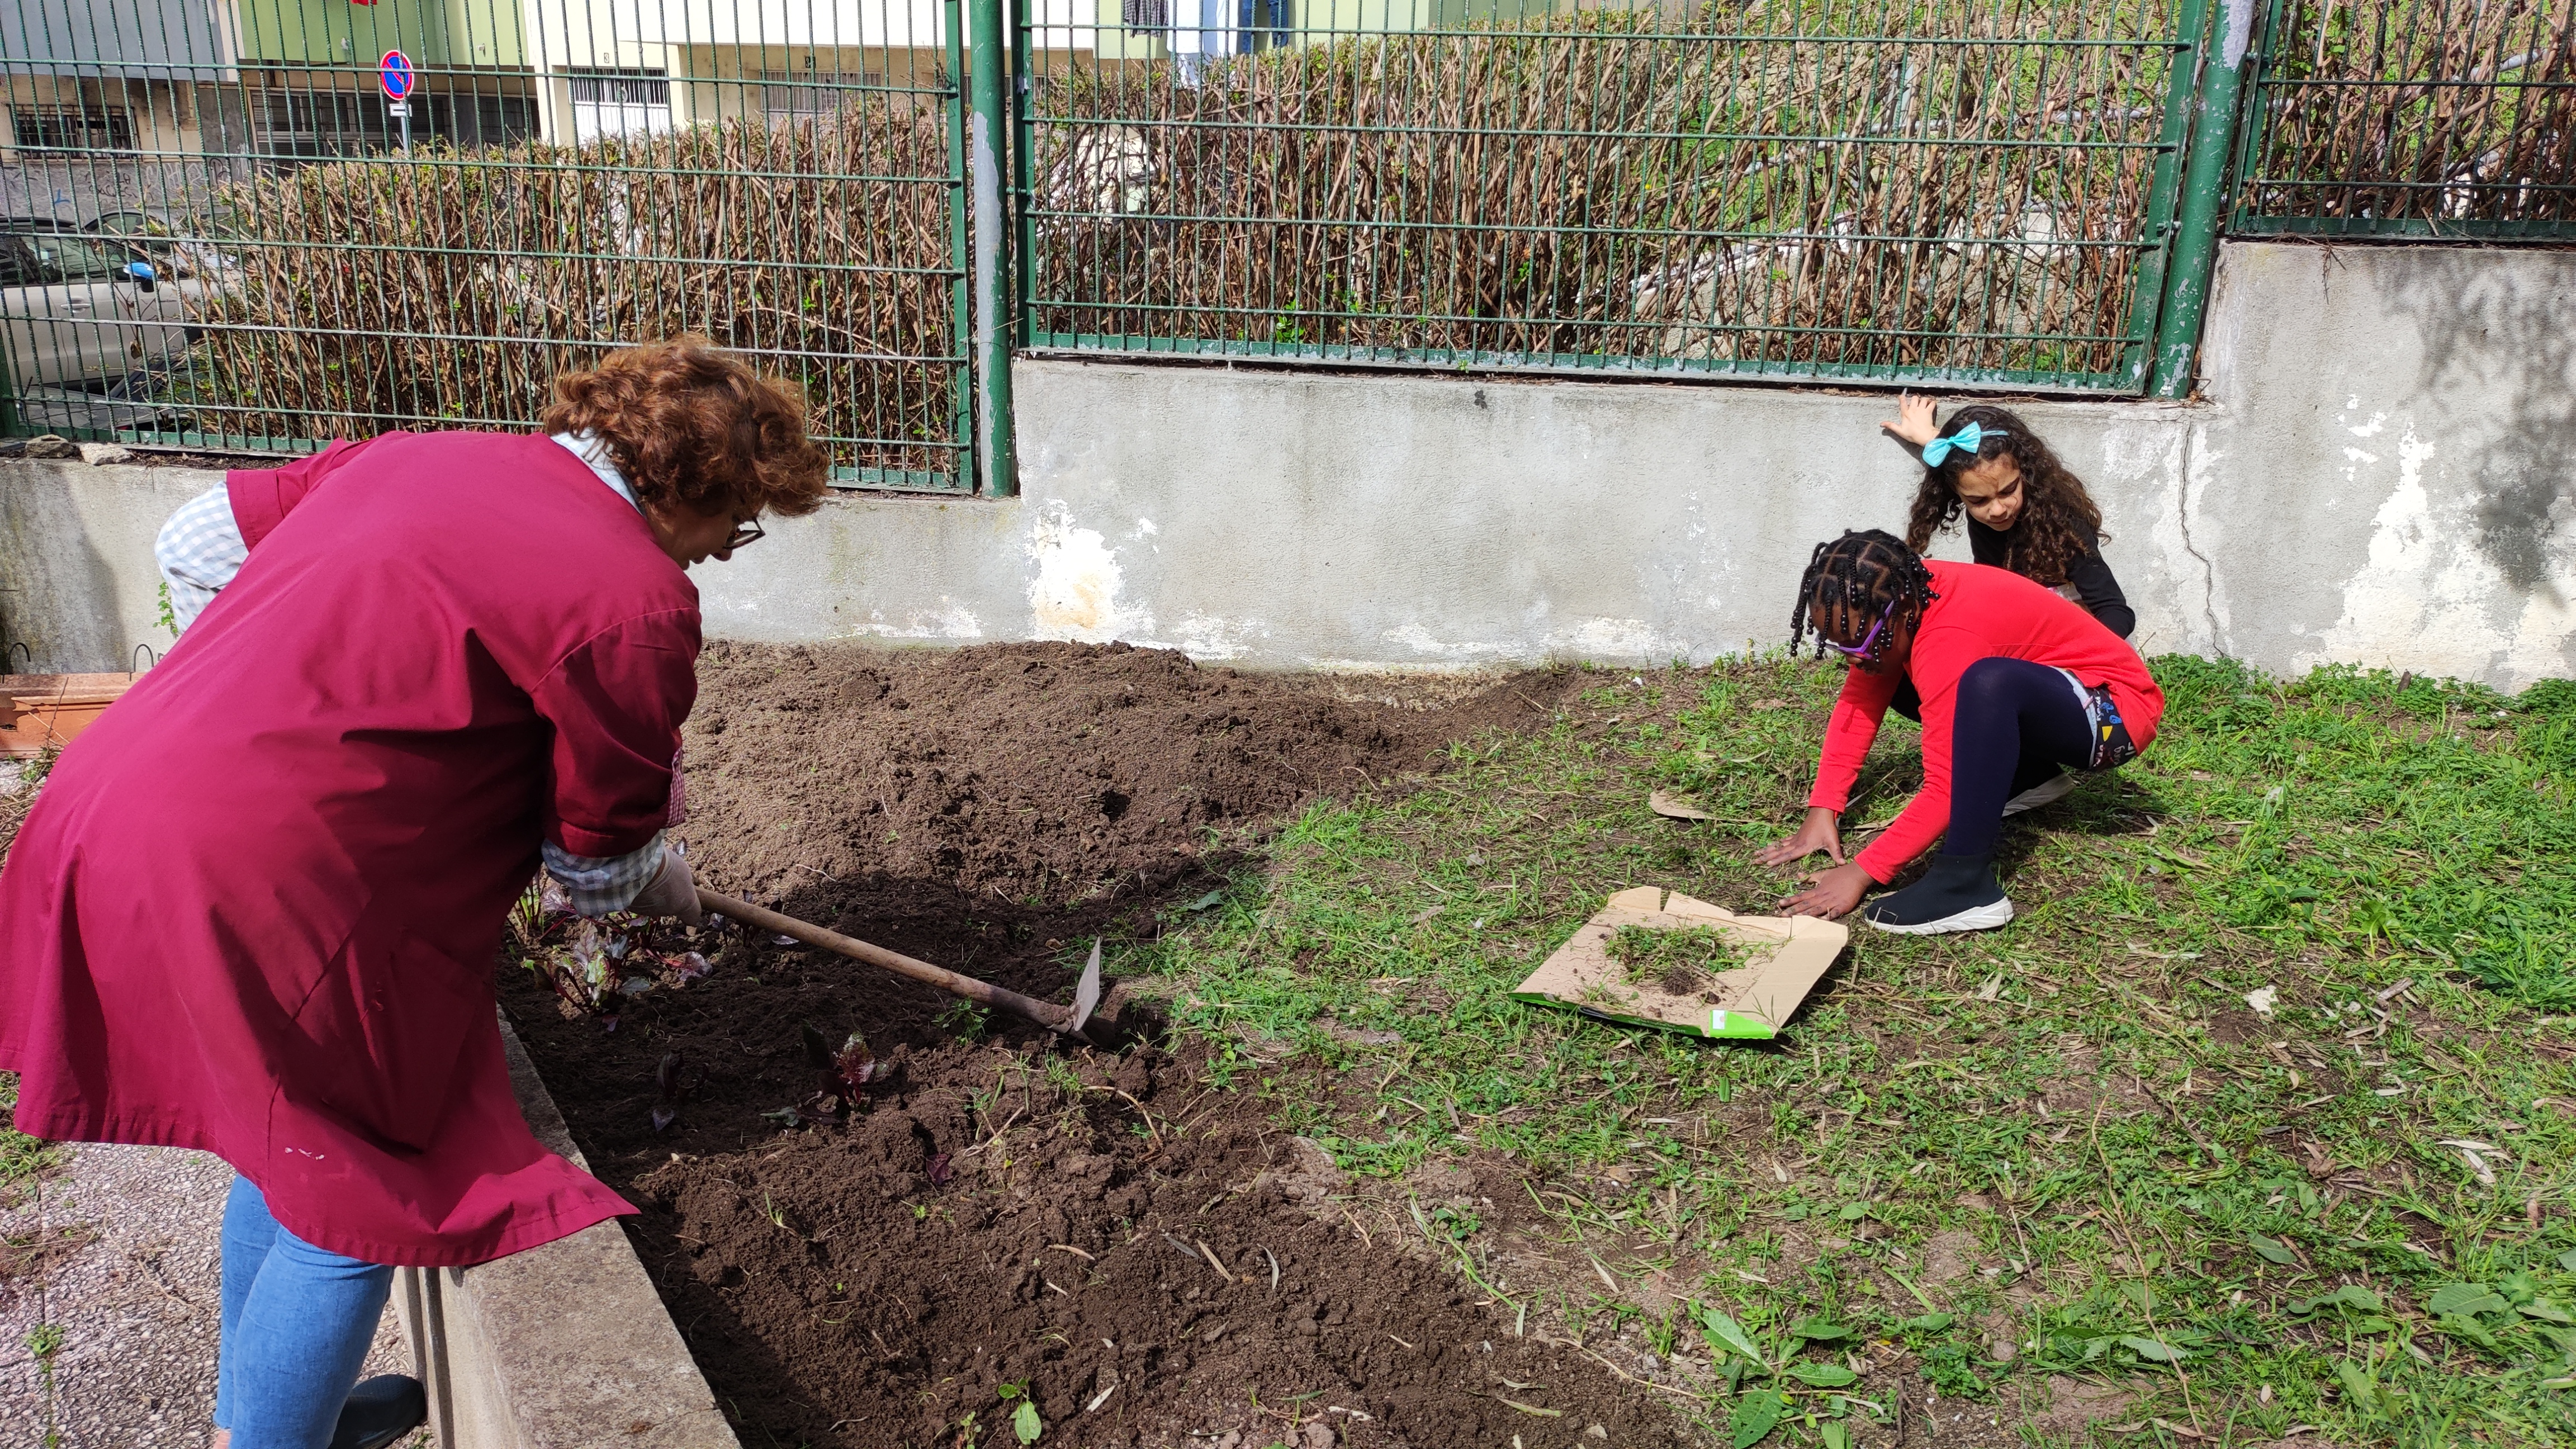 Alunos e Assistente Operacional ajudam fresar a terra retirando as espécies indesejadas e preparando a horta para o cultivo.